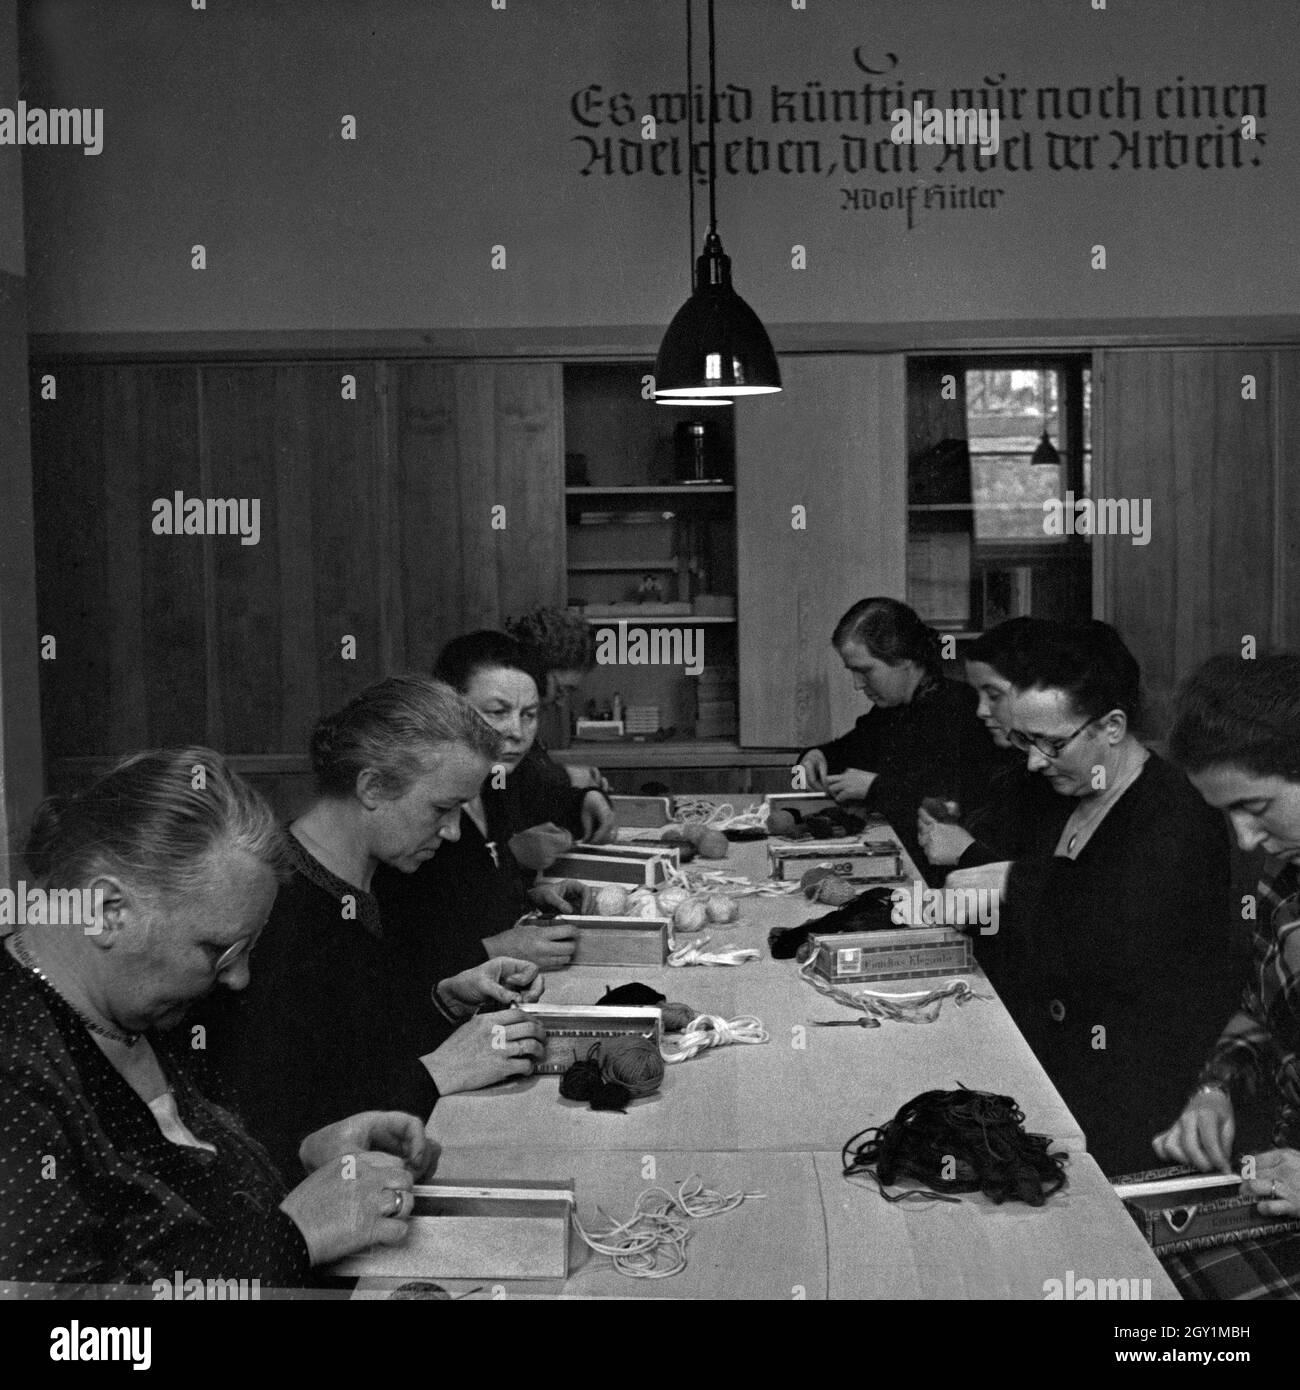 Frauen bei einer Handarbeitsstunde im Rahmen einer Mütterschulung des Reichsmütterdienstes, Deutschland 1930er Jahre. Frauen tun einige Handarbeit an eine Mutter Ausbildung der Reichsmuetterdienst, Deutschland 1930. Stockfoto